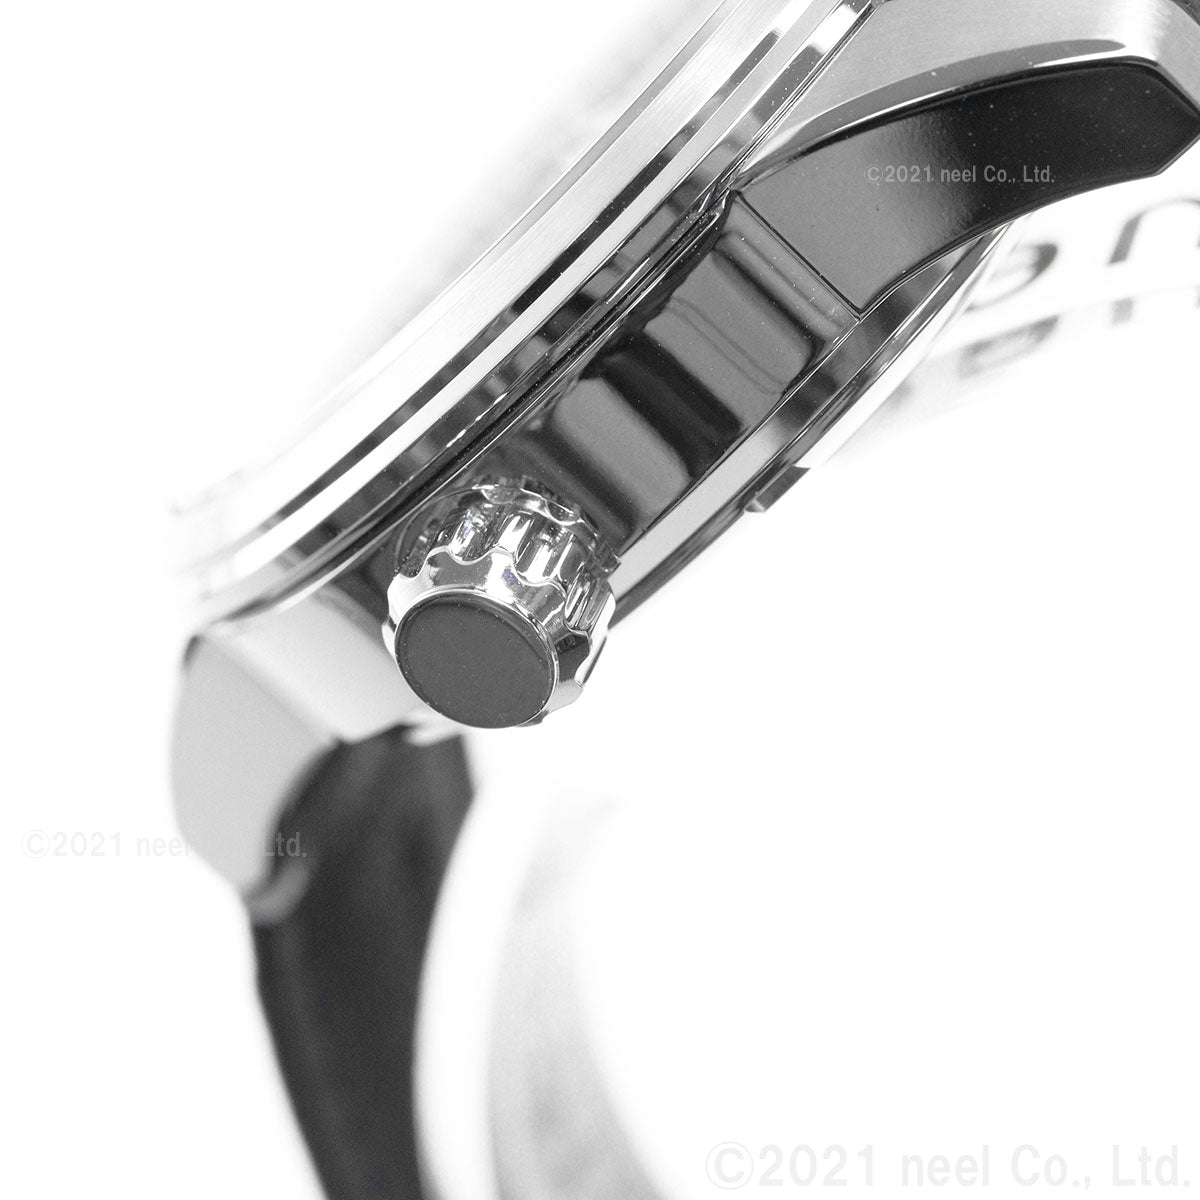 シチズンコレクション CITIZEN COLLECTION メカニカル 銀箔漆文字板 自動巻き 機械式 腕時計 メンズ NB3020-16W